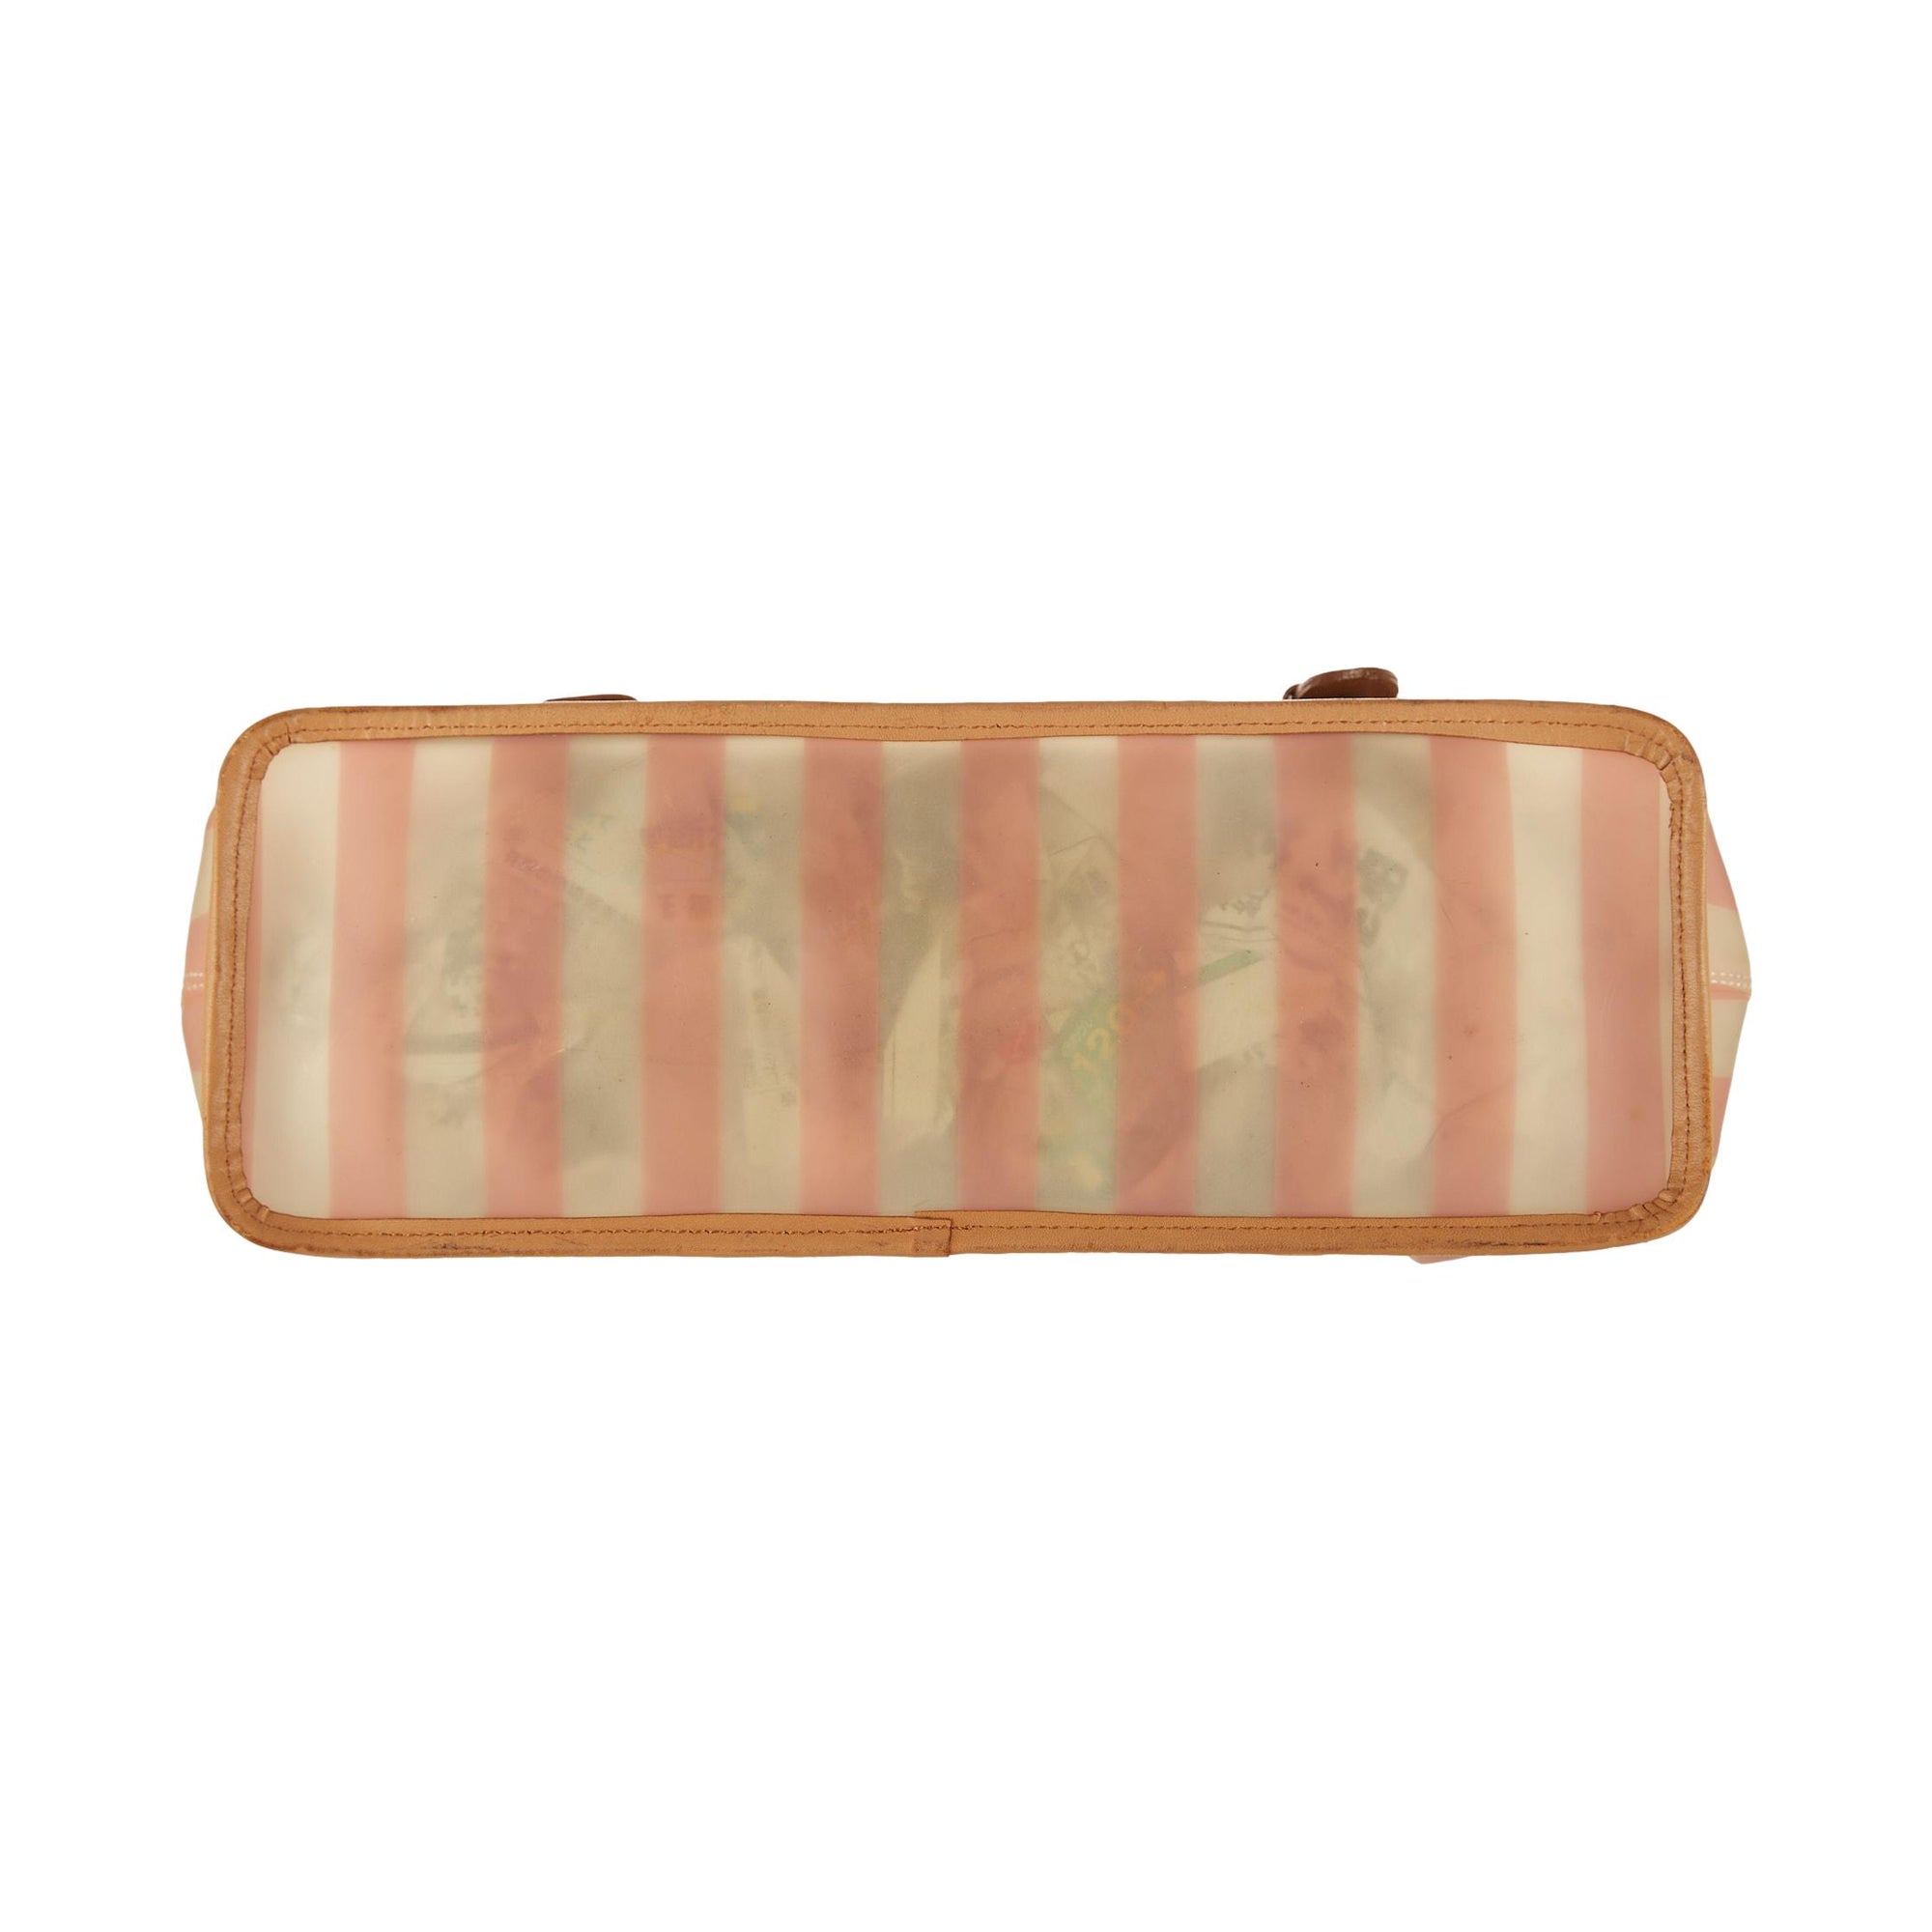 Jean Paul Gaultier Pink Striped Top Handle Bag